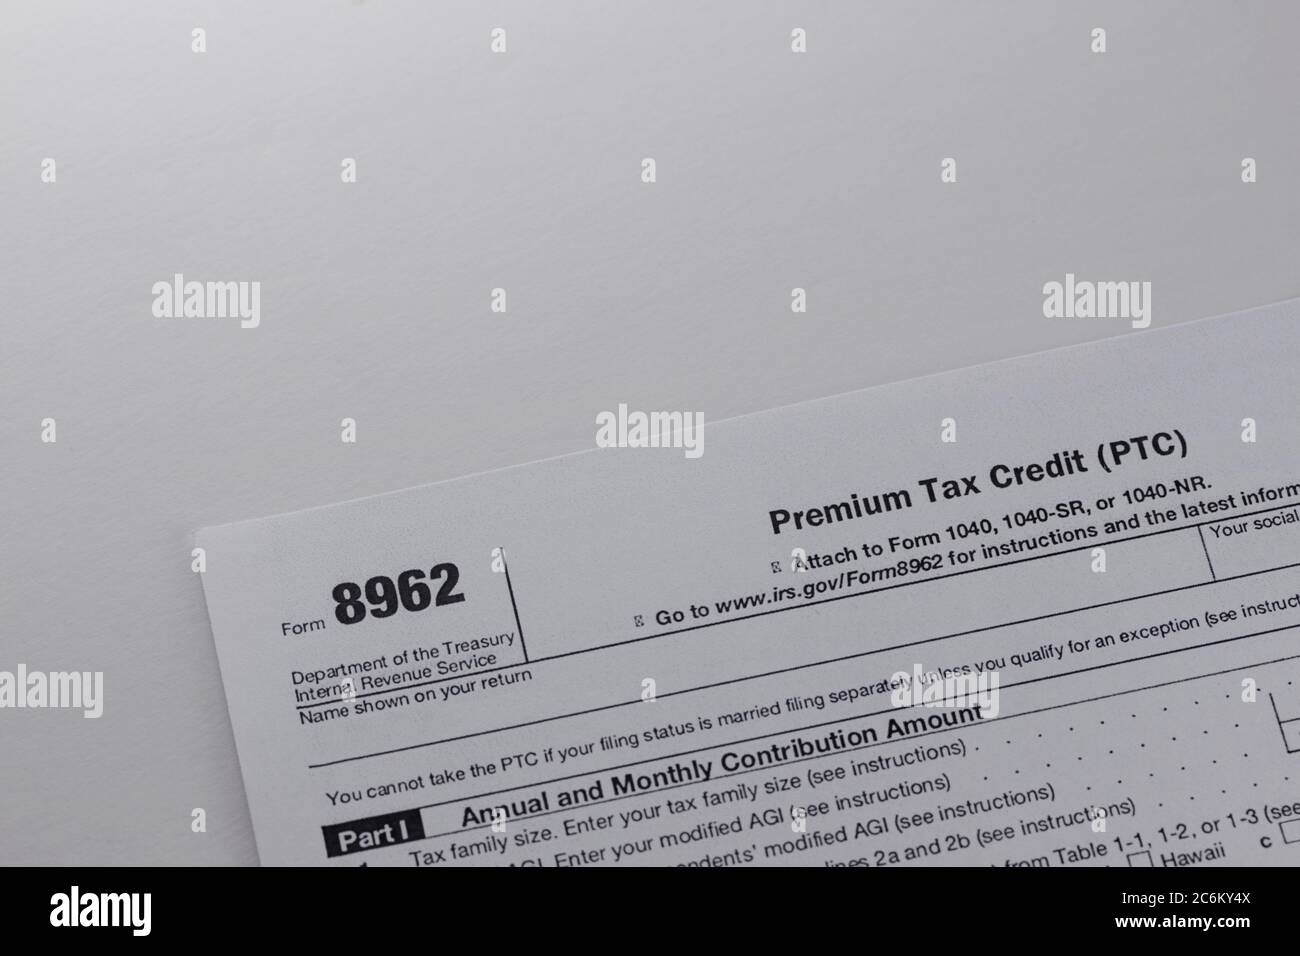 Formulario de impuestos federales del irs 8962 para reportar el crédito de impuestos de primas recibido para el seguro de salud a través de la ley de atención médica asequible u Obamacare ona blanca ba Foto de stock